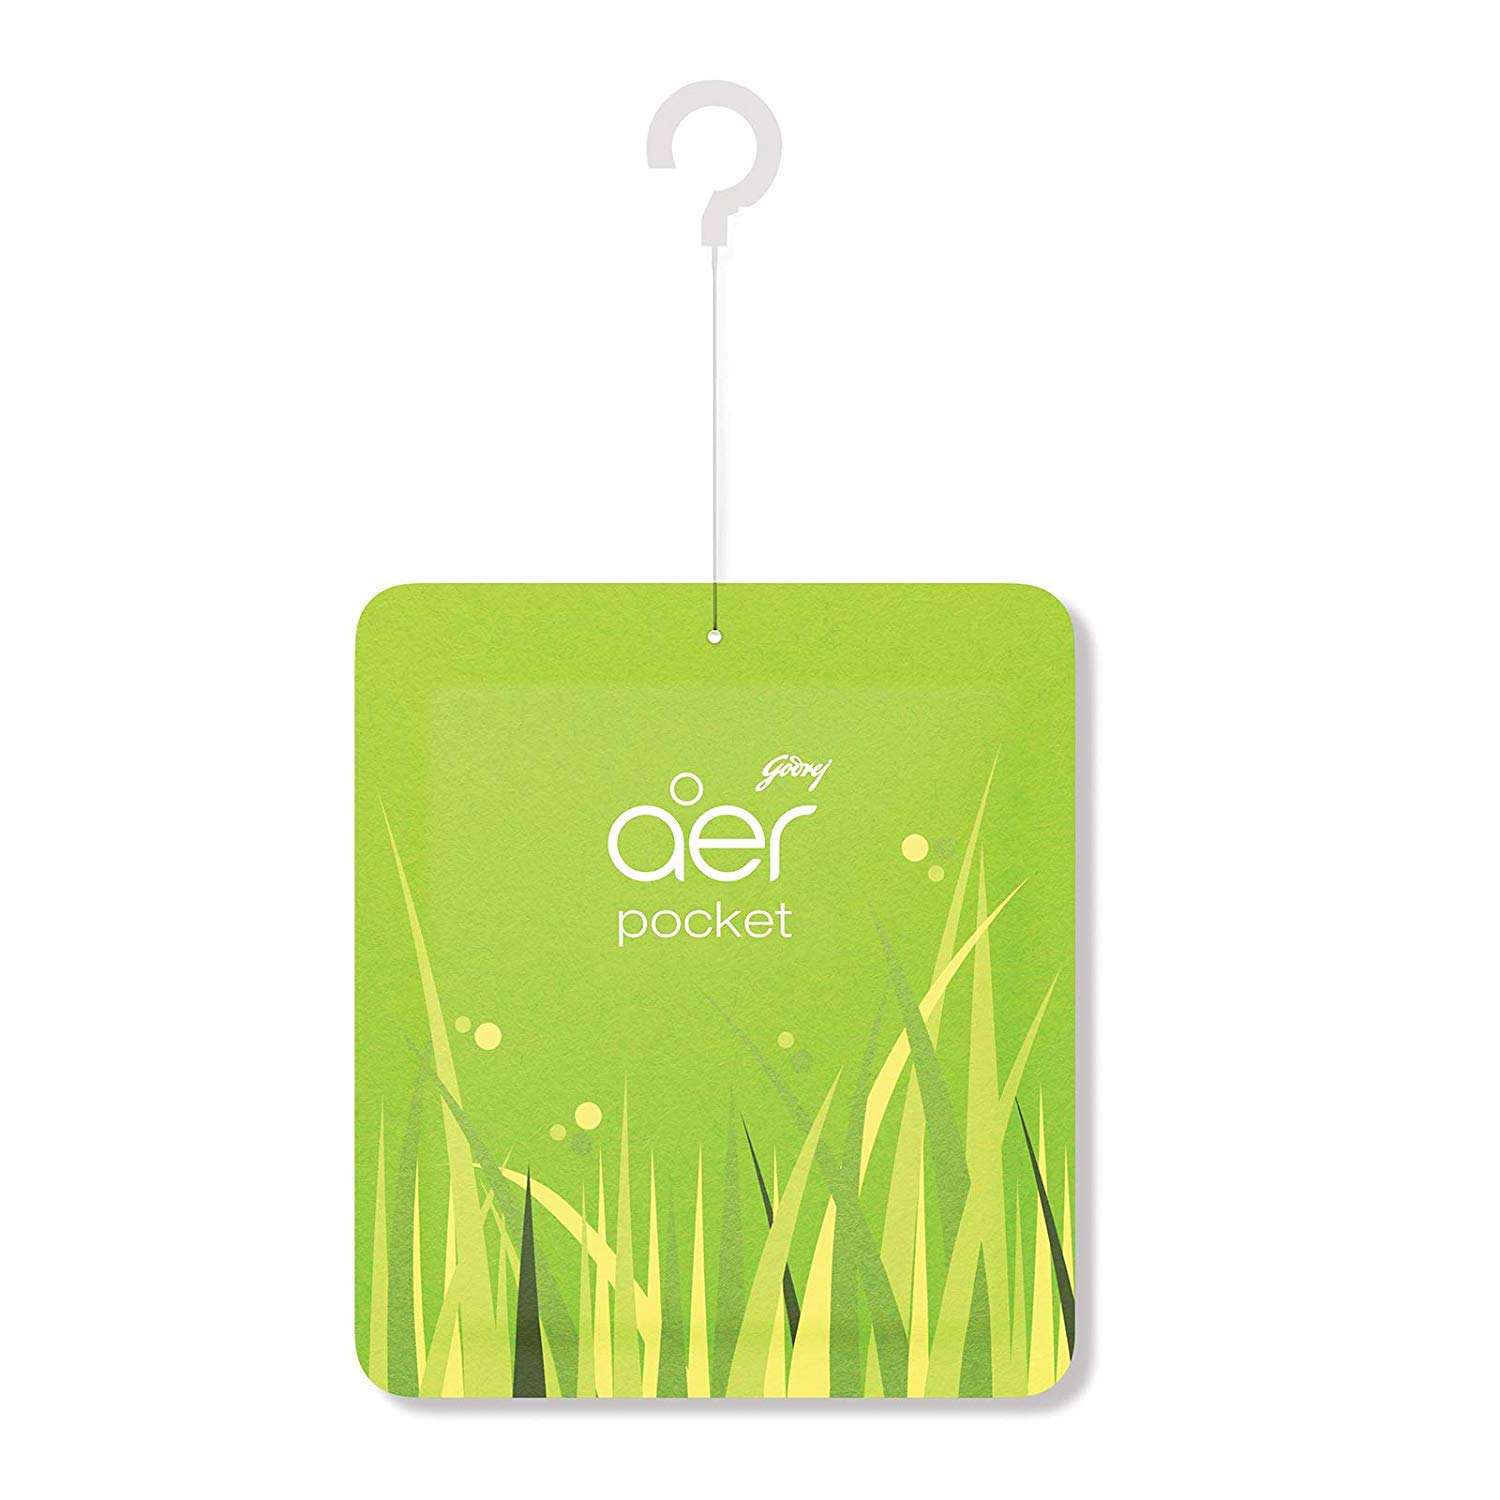 Godrej aer Pocket, Bathroom Air Fragrance - Fresh Lush Green (10g)